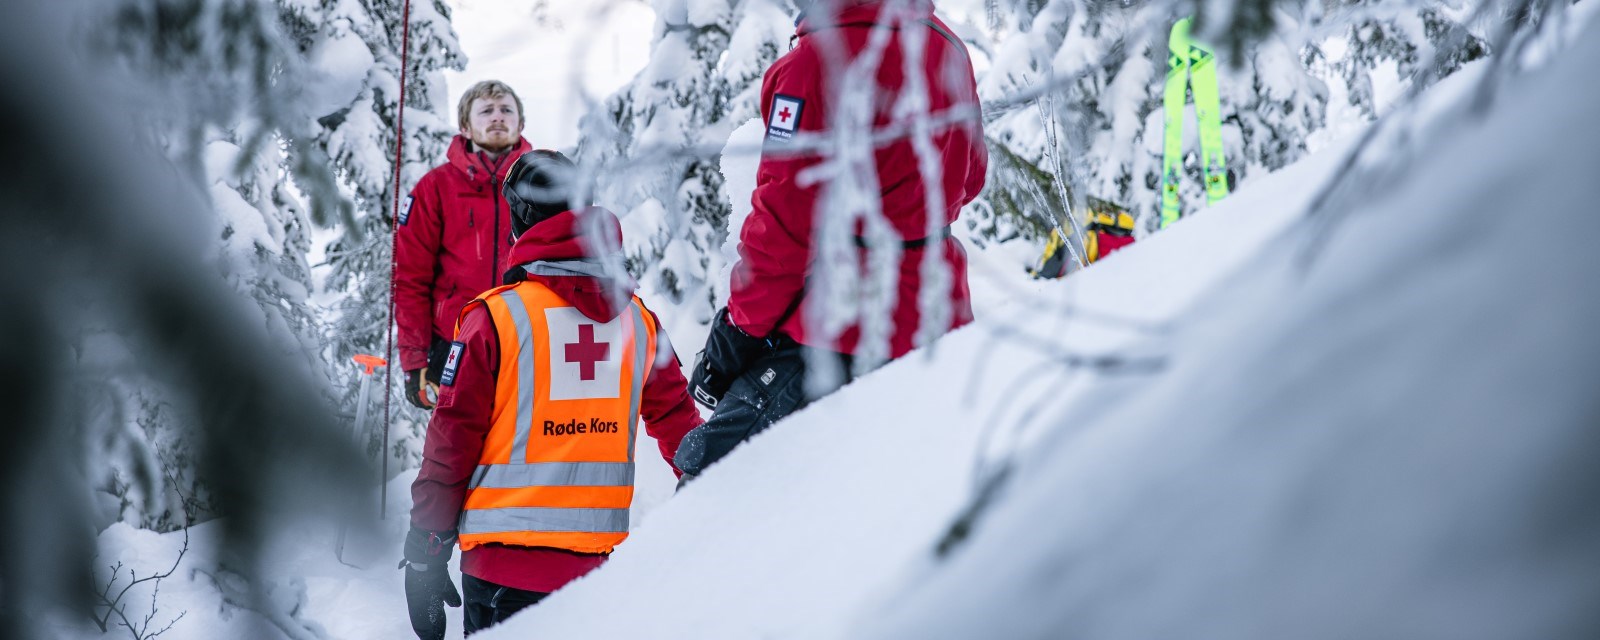 Tre personer med hjelpekorpsuniform står i en snødekket skog